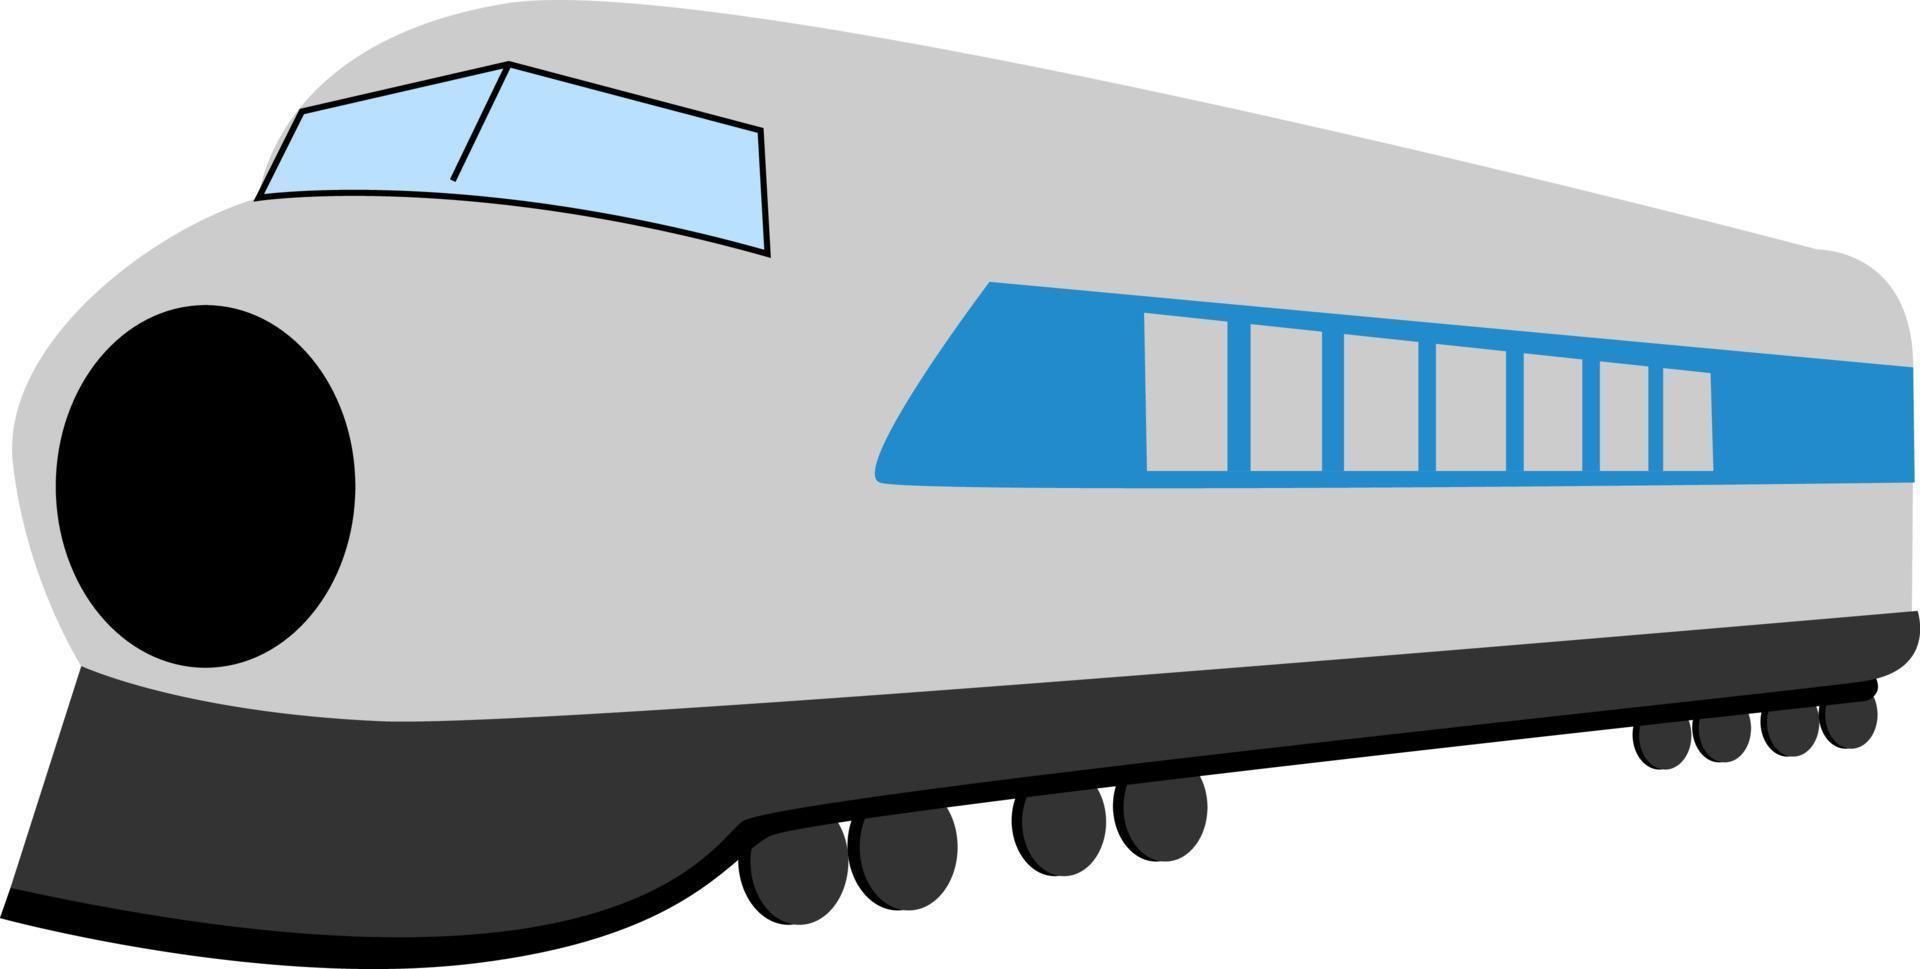 voiture de train, illustration, vecteur sur fond blanc.